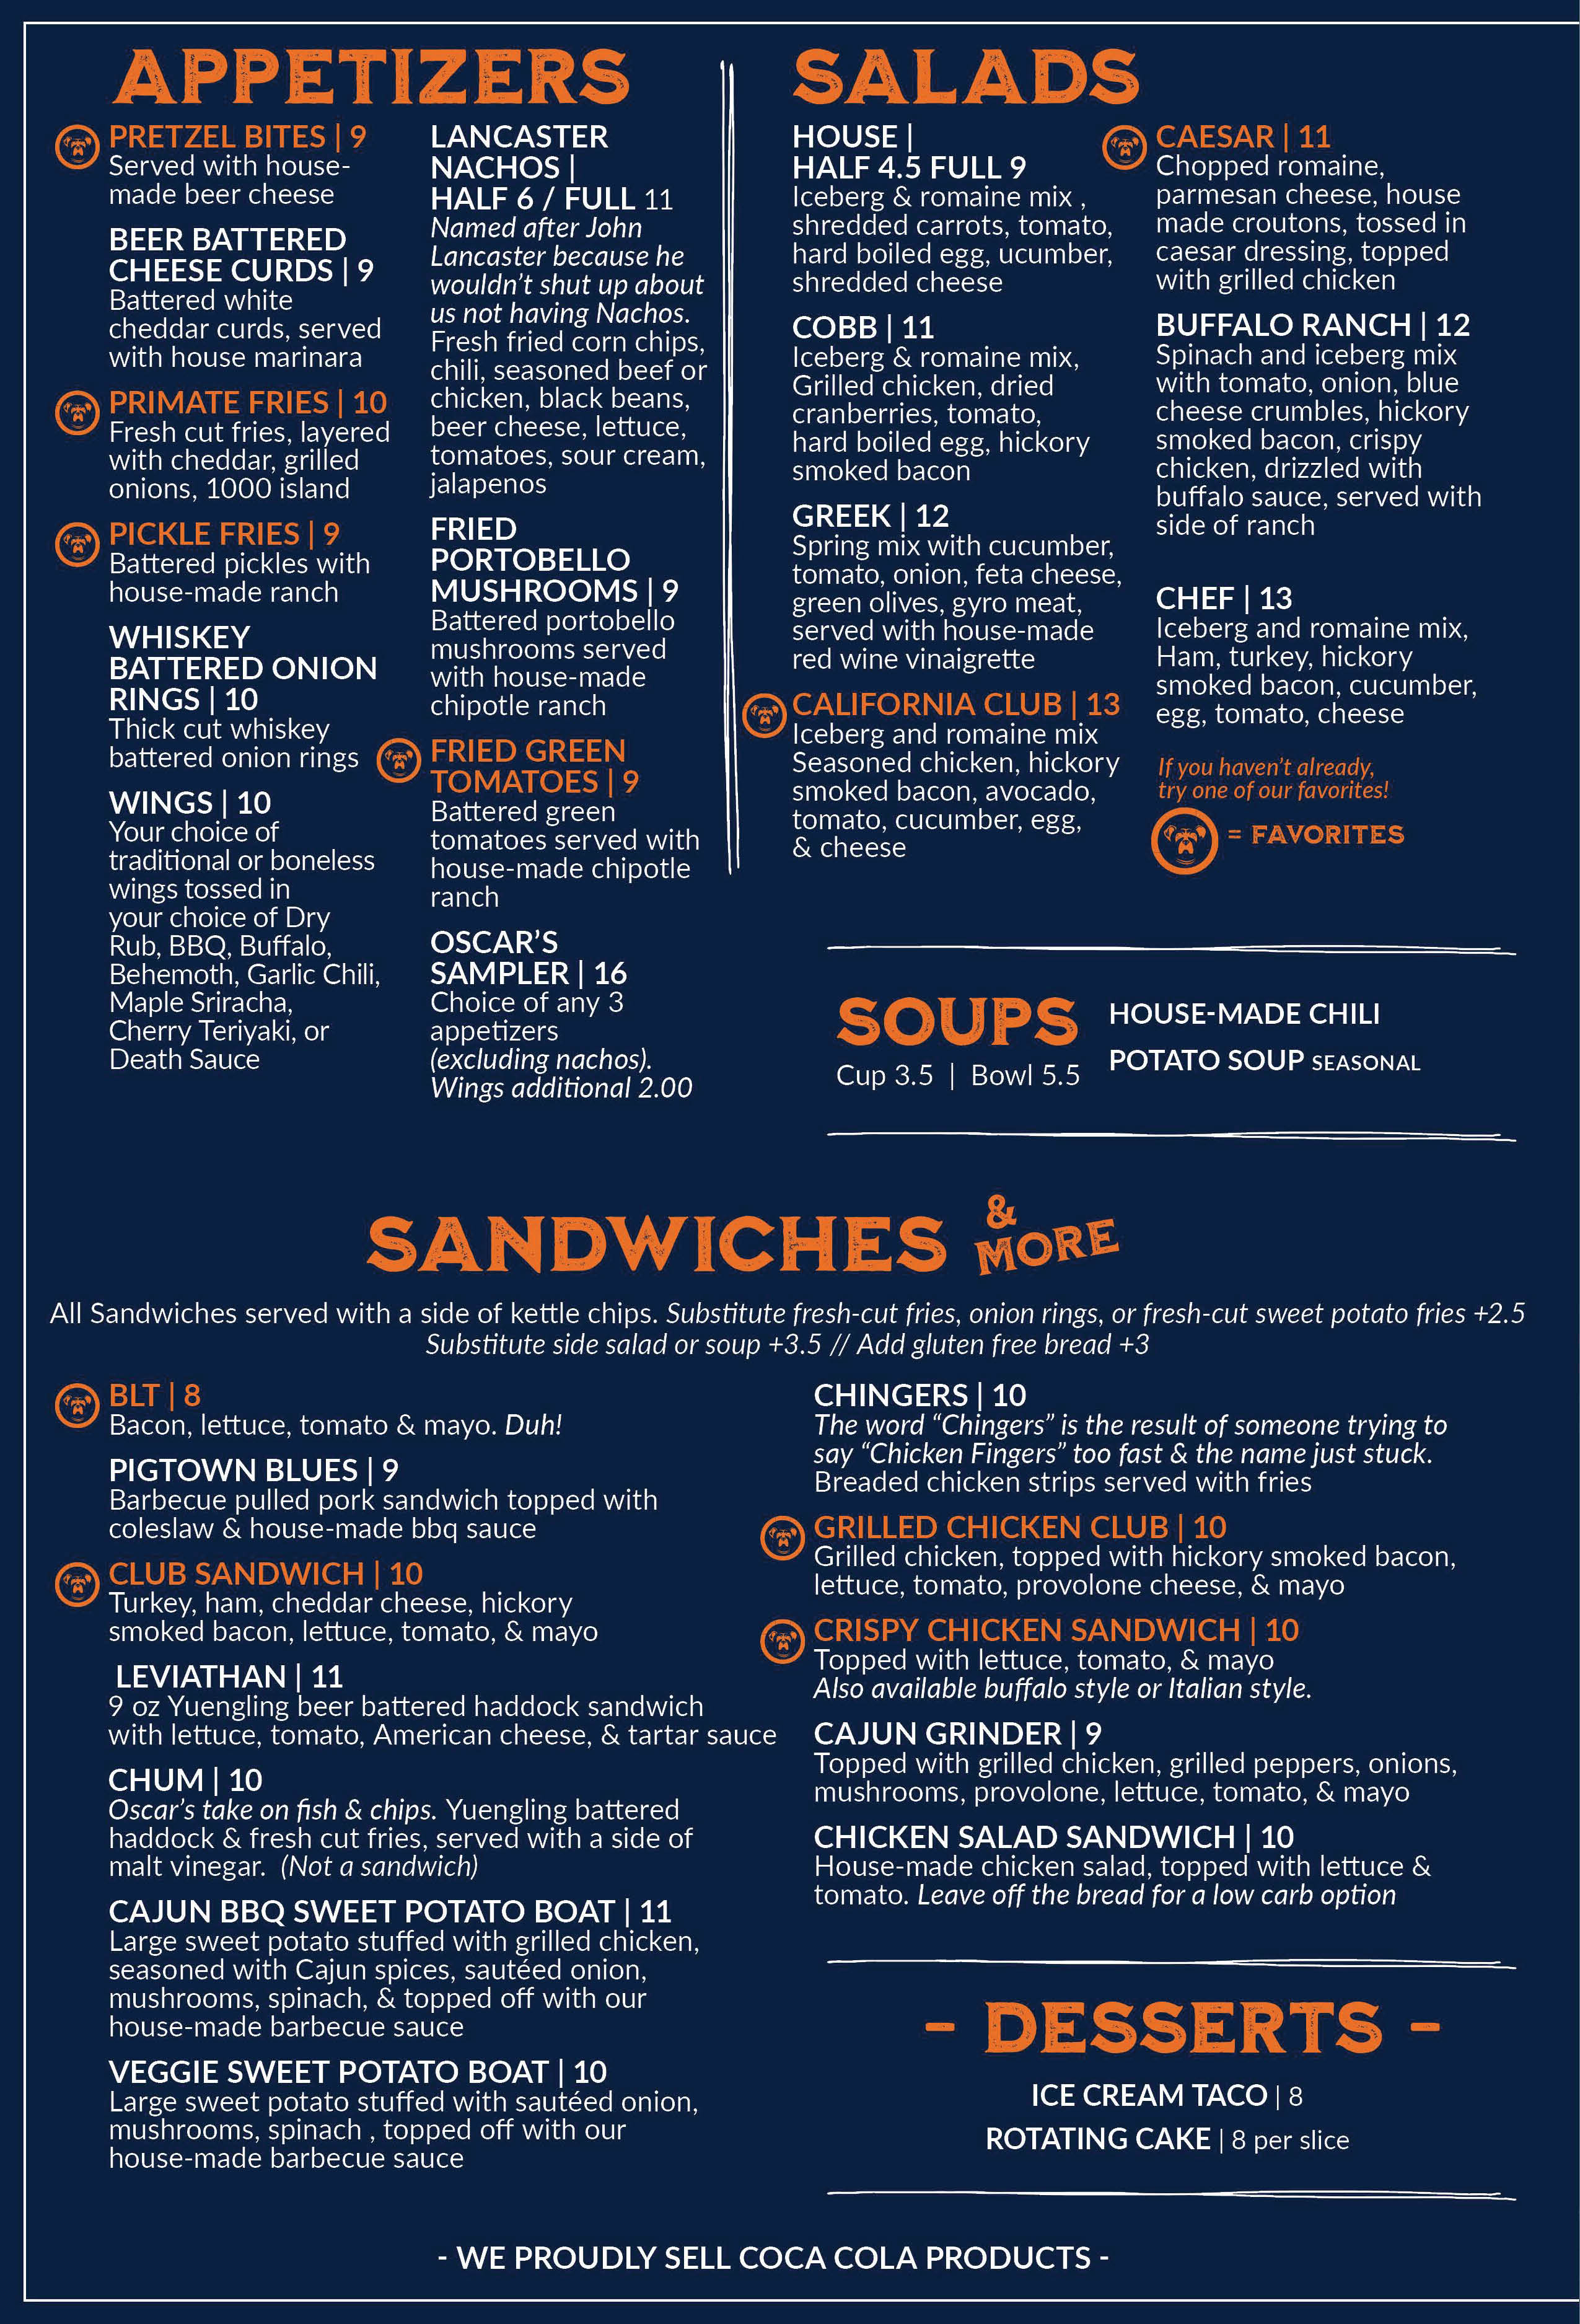 Oscar's menu - Appetizers, Soups, Salads, Sandwiches, Desserts